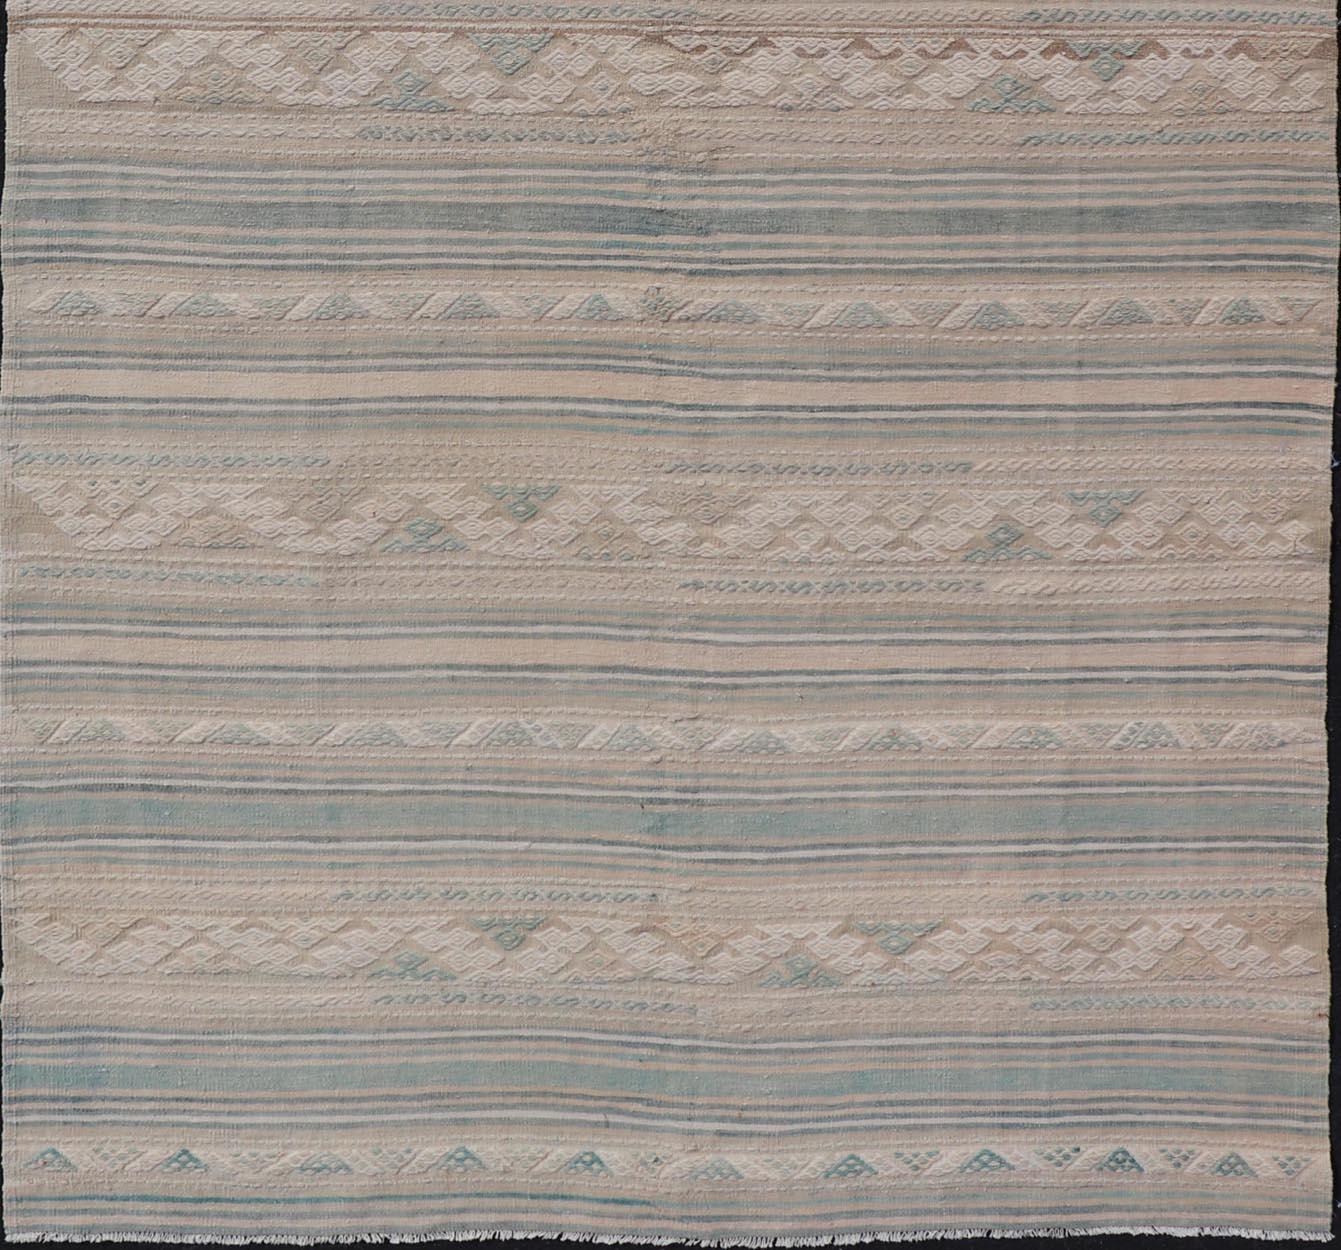 Großer türkischer Kelim-Vintage-Teppich in hellem Taupe, Hellgrün, Creme und Hellbraun, aus einer großen Galerie
Gewebter Kunst-/Teppich EN-13968, Herkunftsland/Typ: Türkei/Kelim, um 1950

Maße: 1,22 m x 3,66 m.